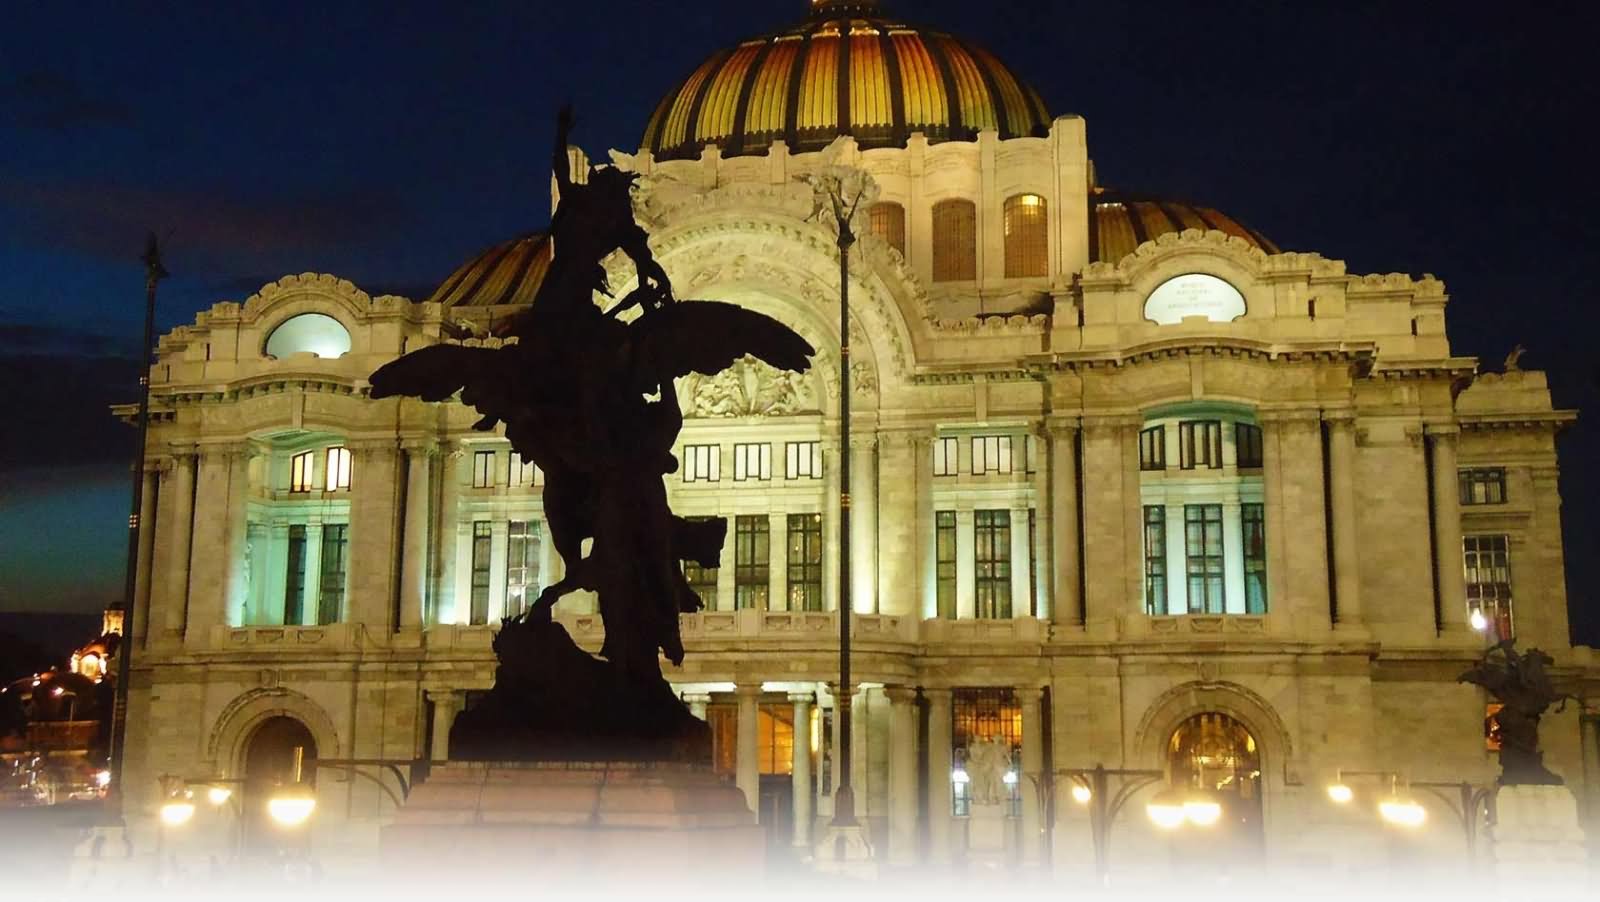 Night View Of Statue And Palacio de Bellas Artes